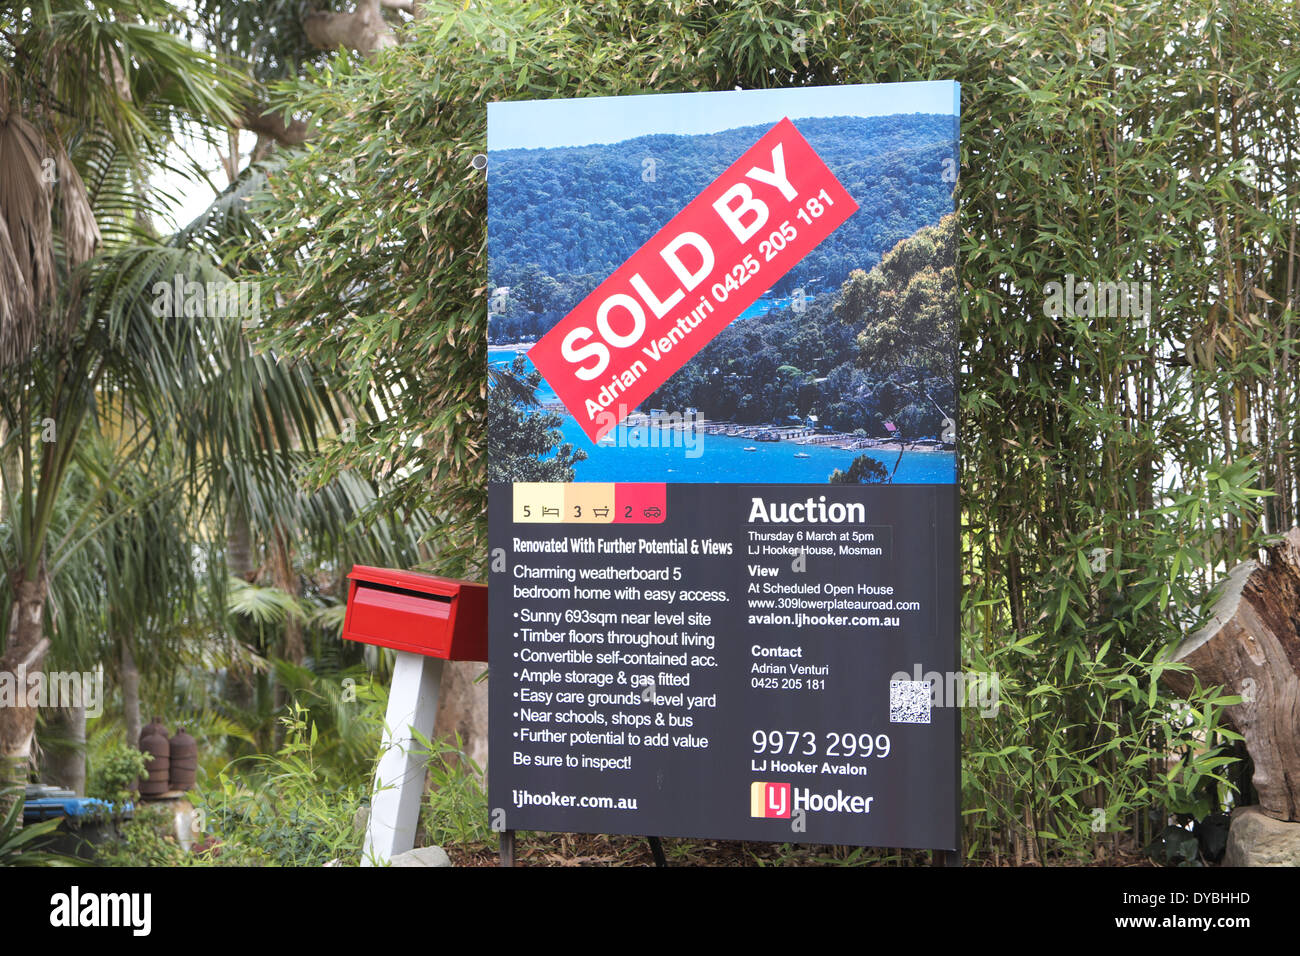 Wohneigentum für Verkauf/verkauft in Avalon, Sydney, Australien Stockfoto